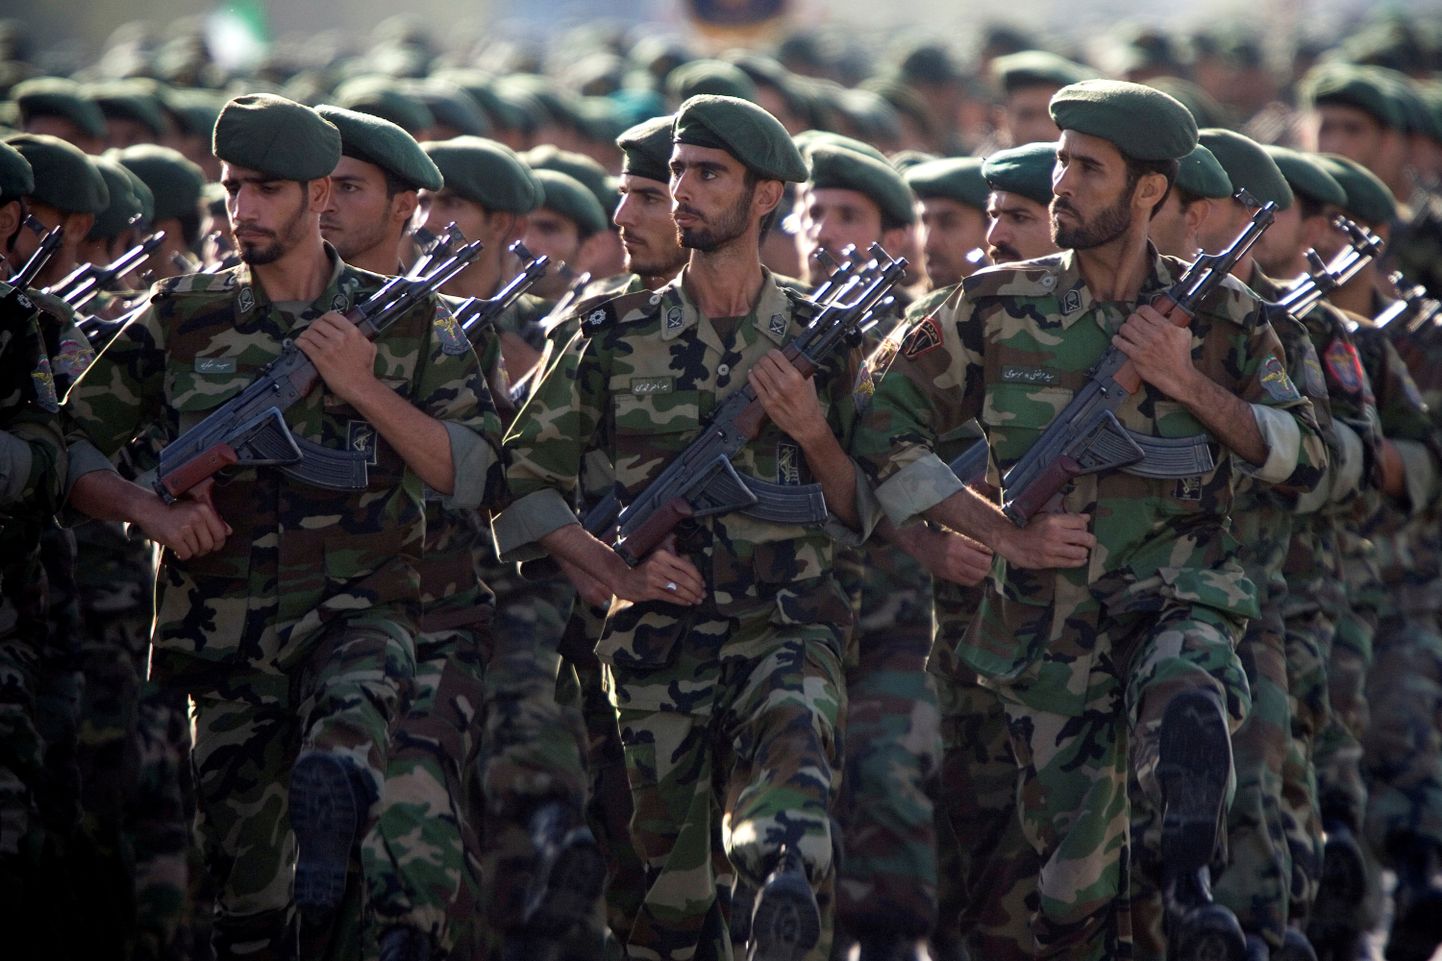 Iraani revolutsioonikaardi sõdurid.